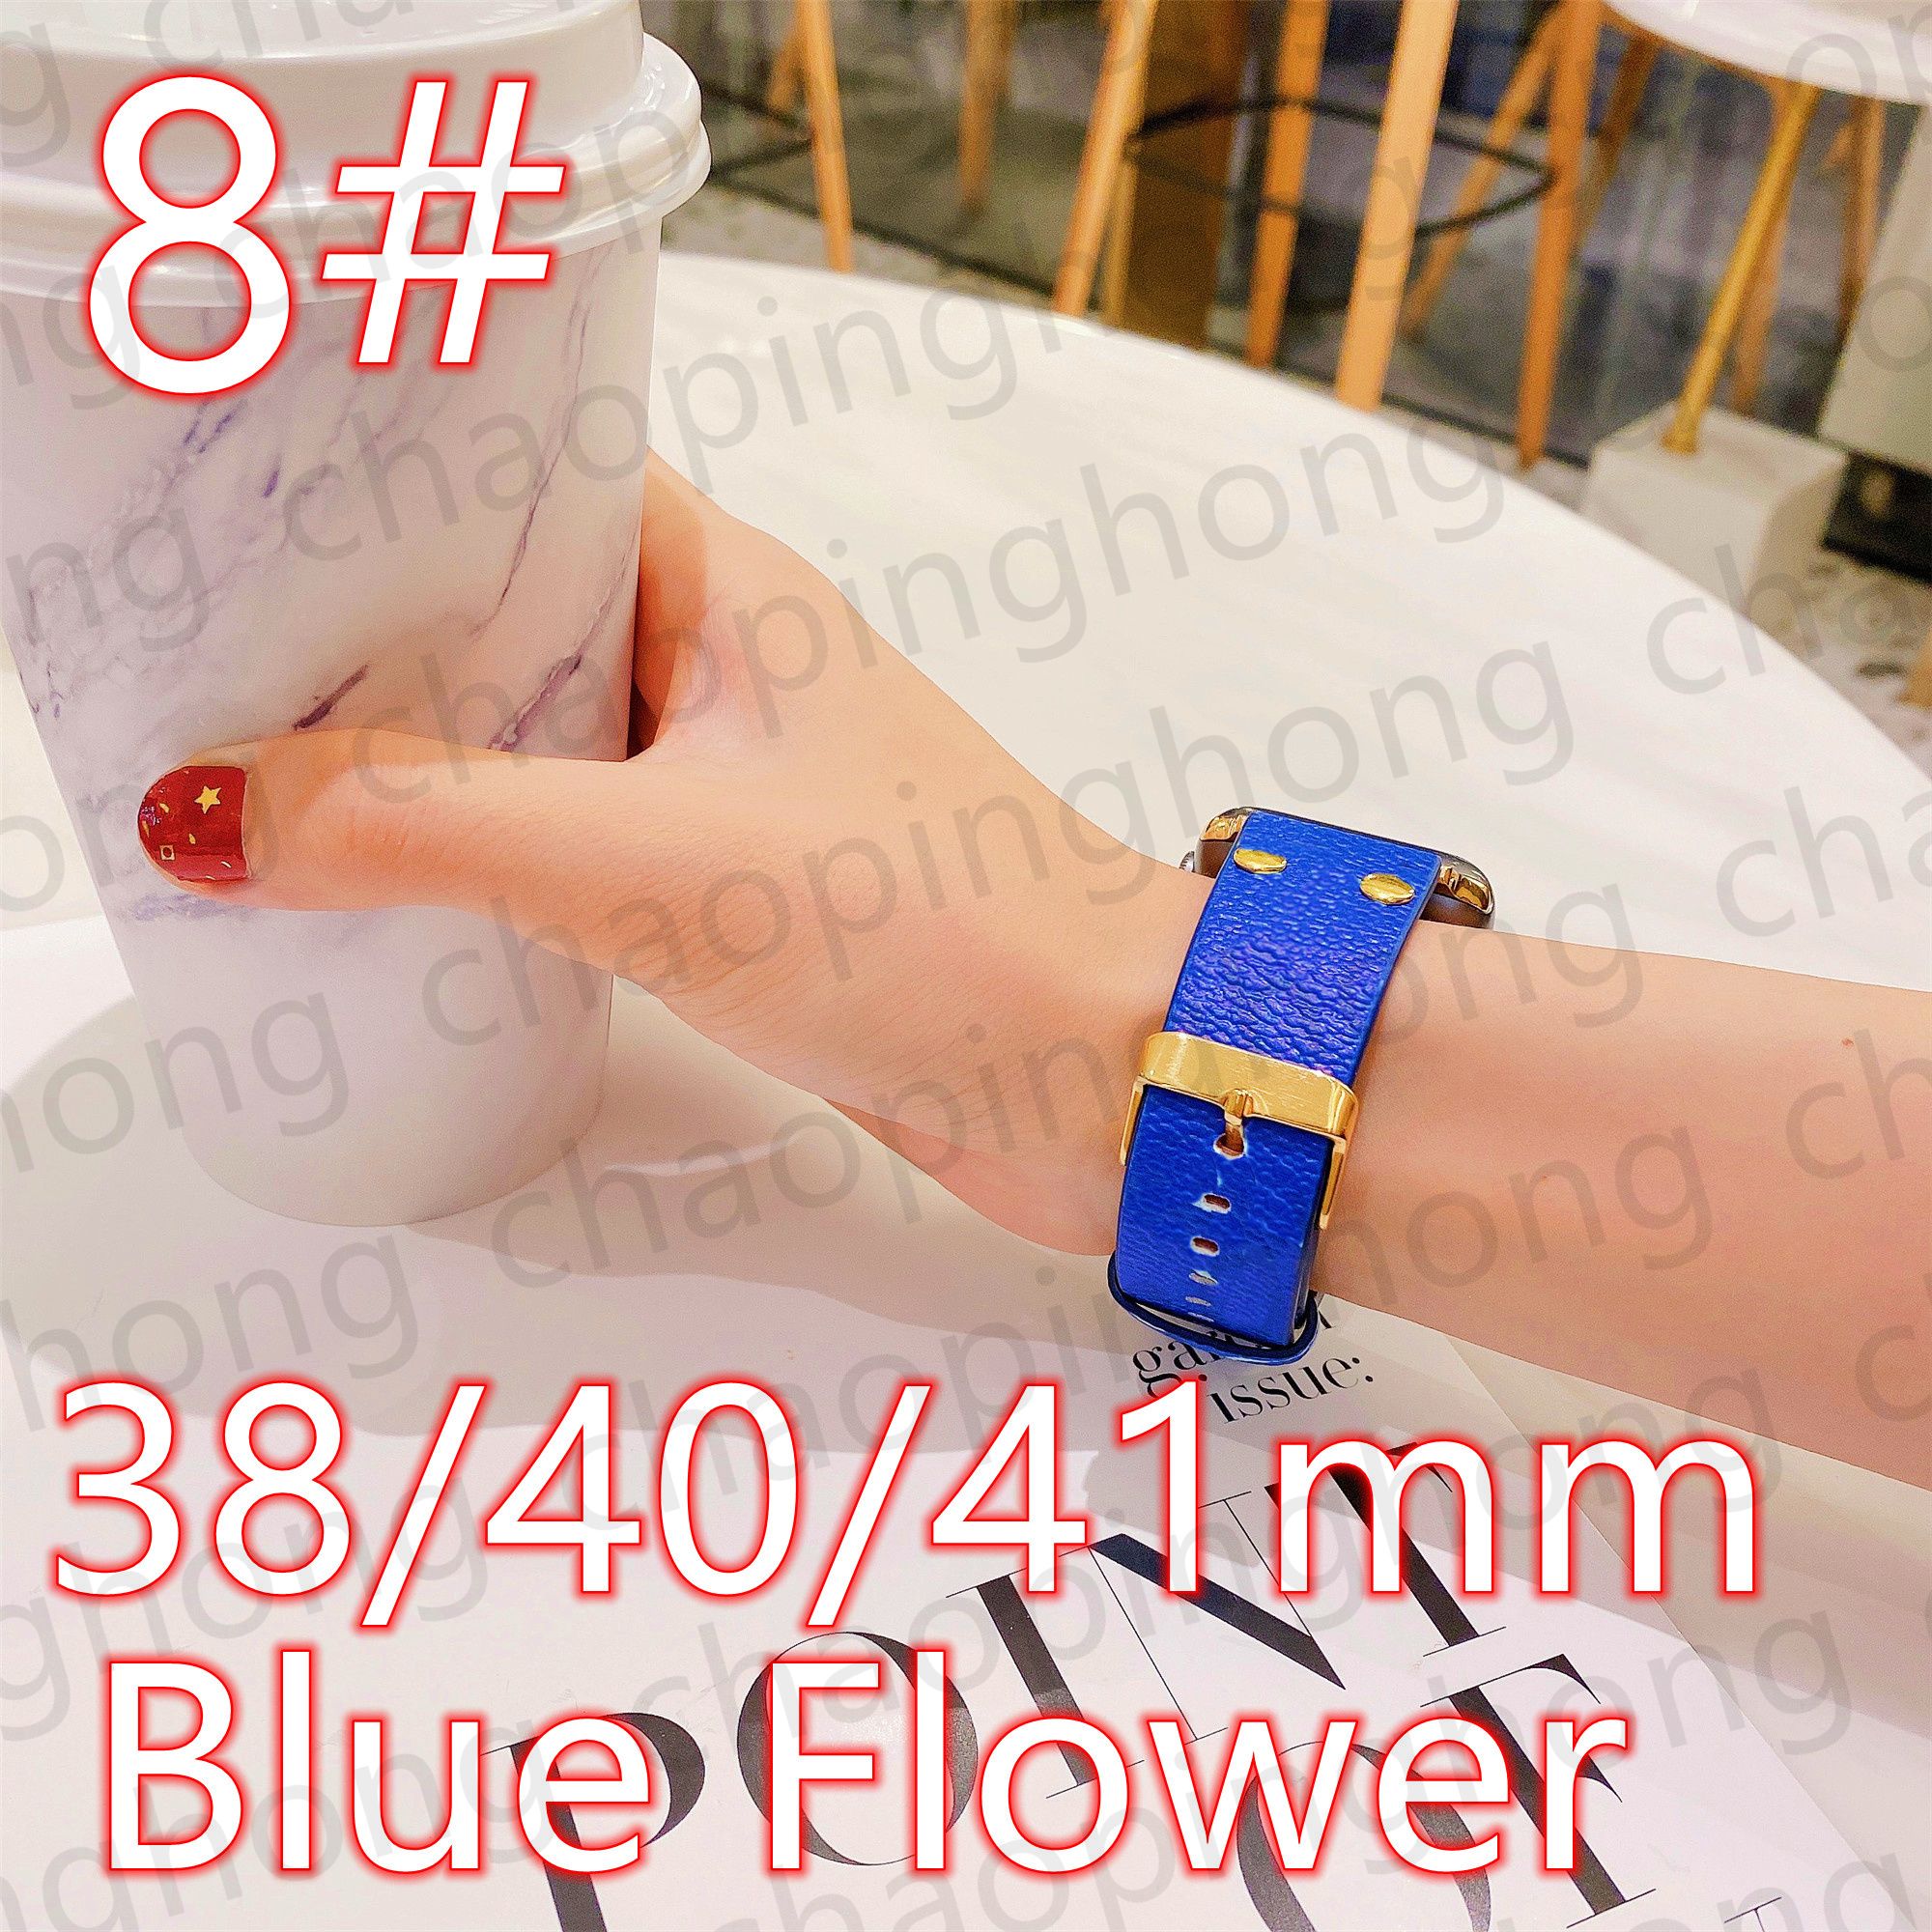 8#38/40/41mm Blue Flower V LOGO